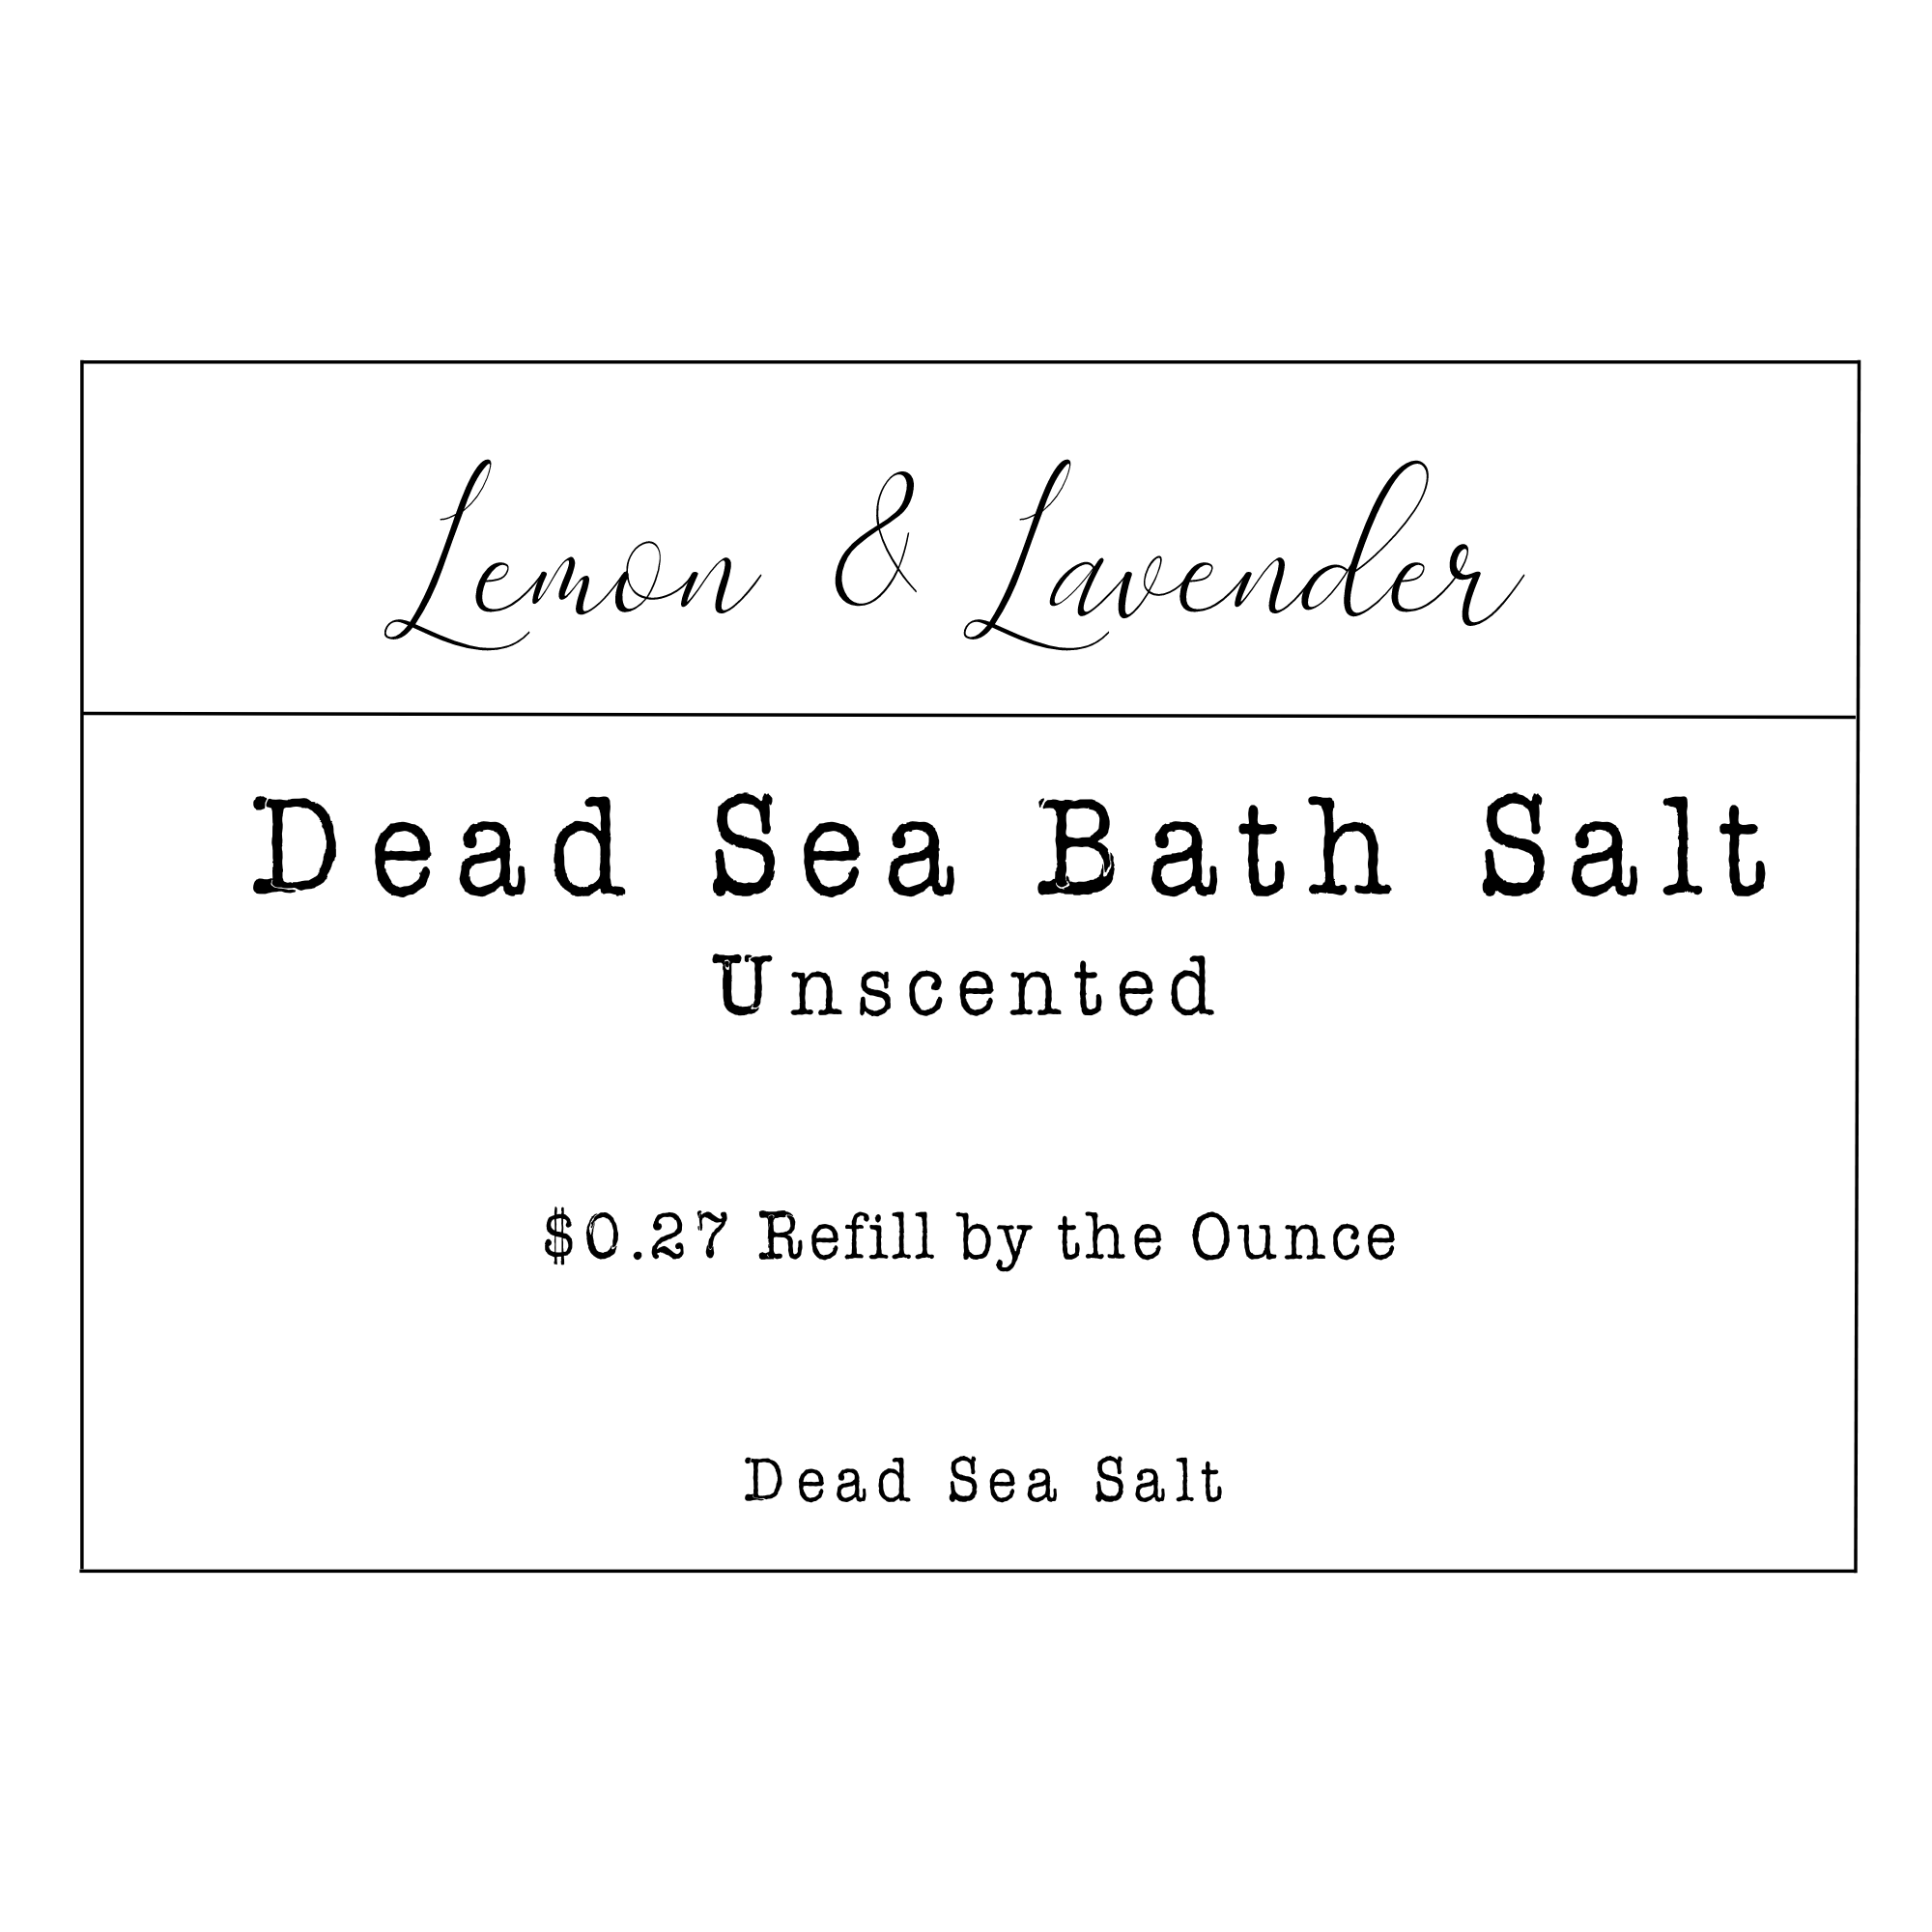 Refill by the Ounce - Dead Sea Bath Salt - Lemon & Lavender